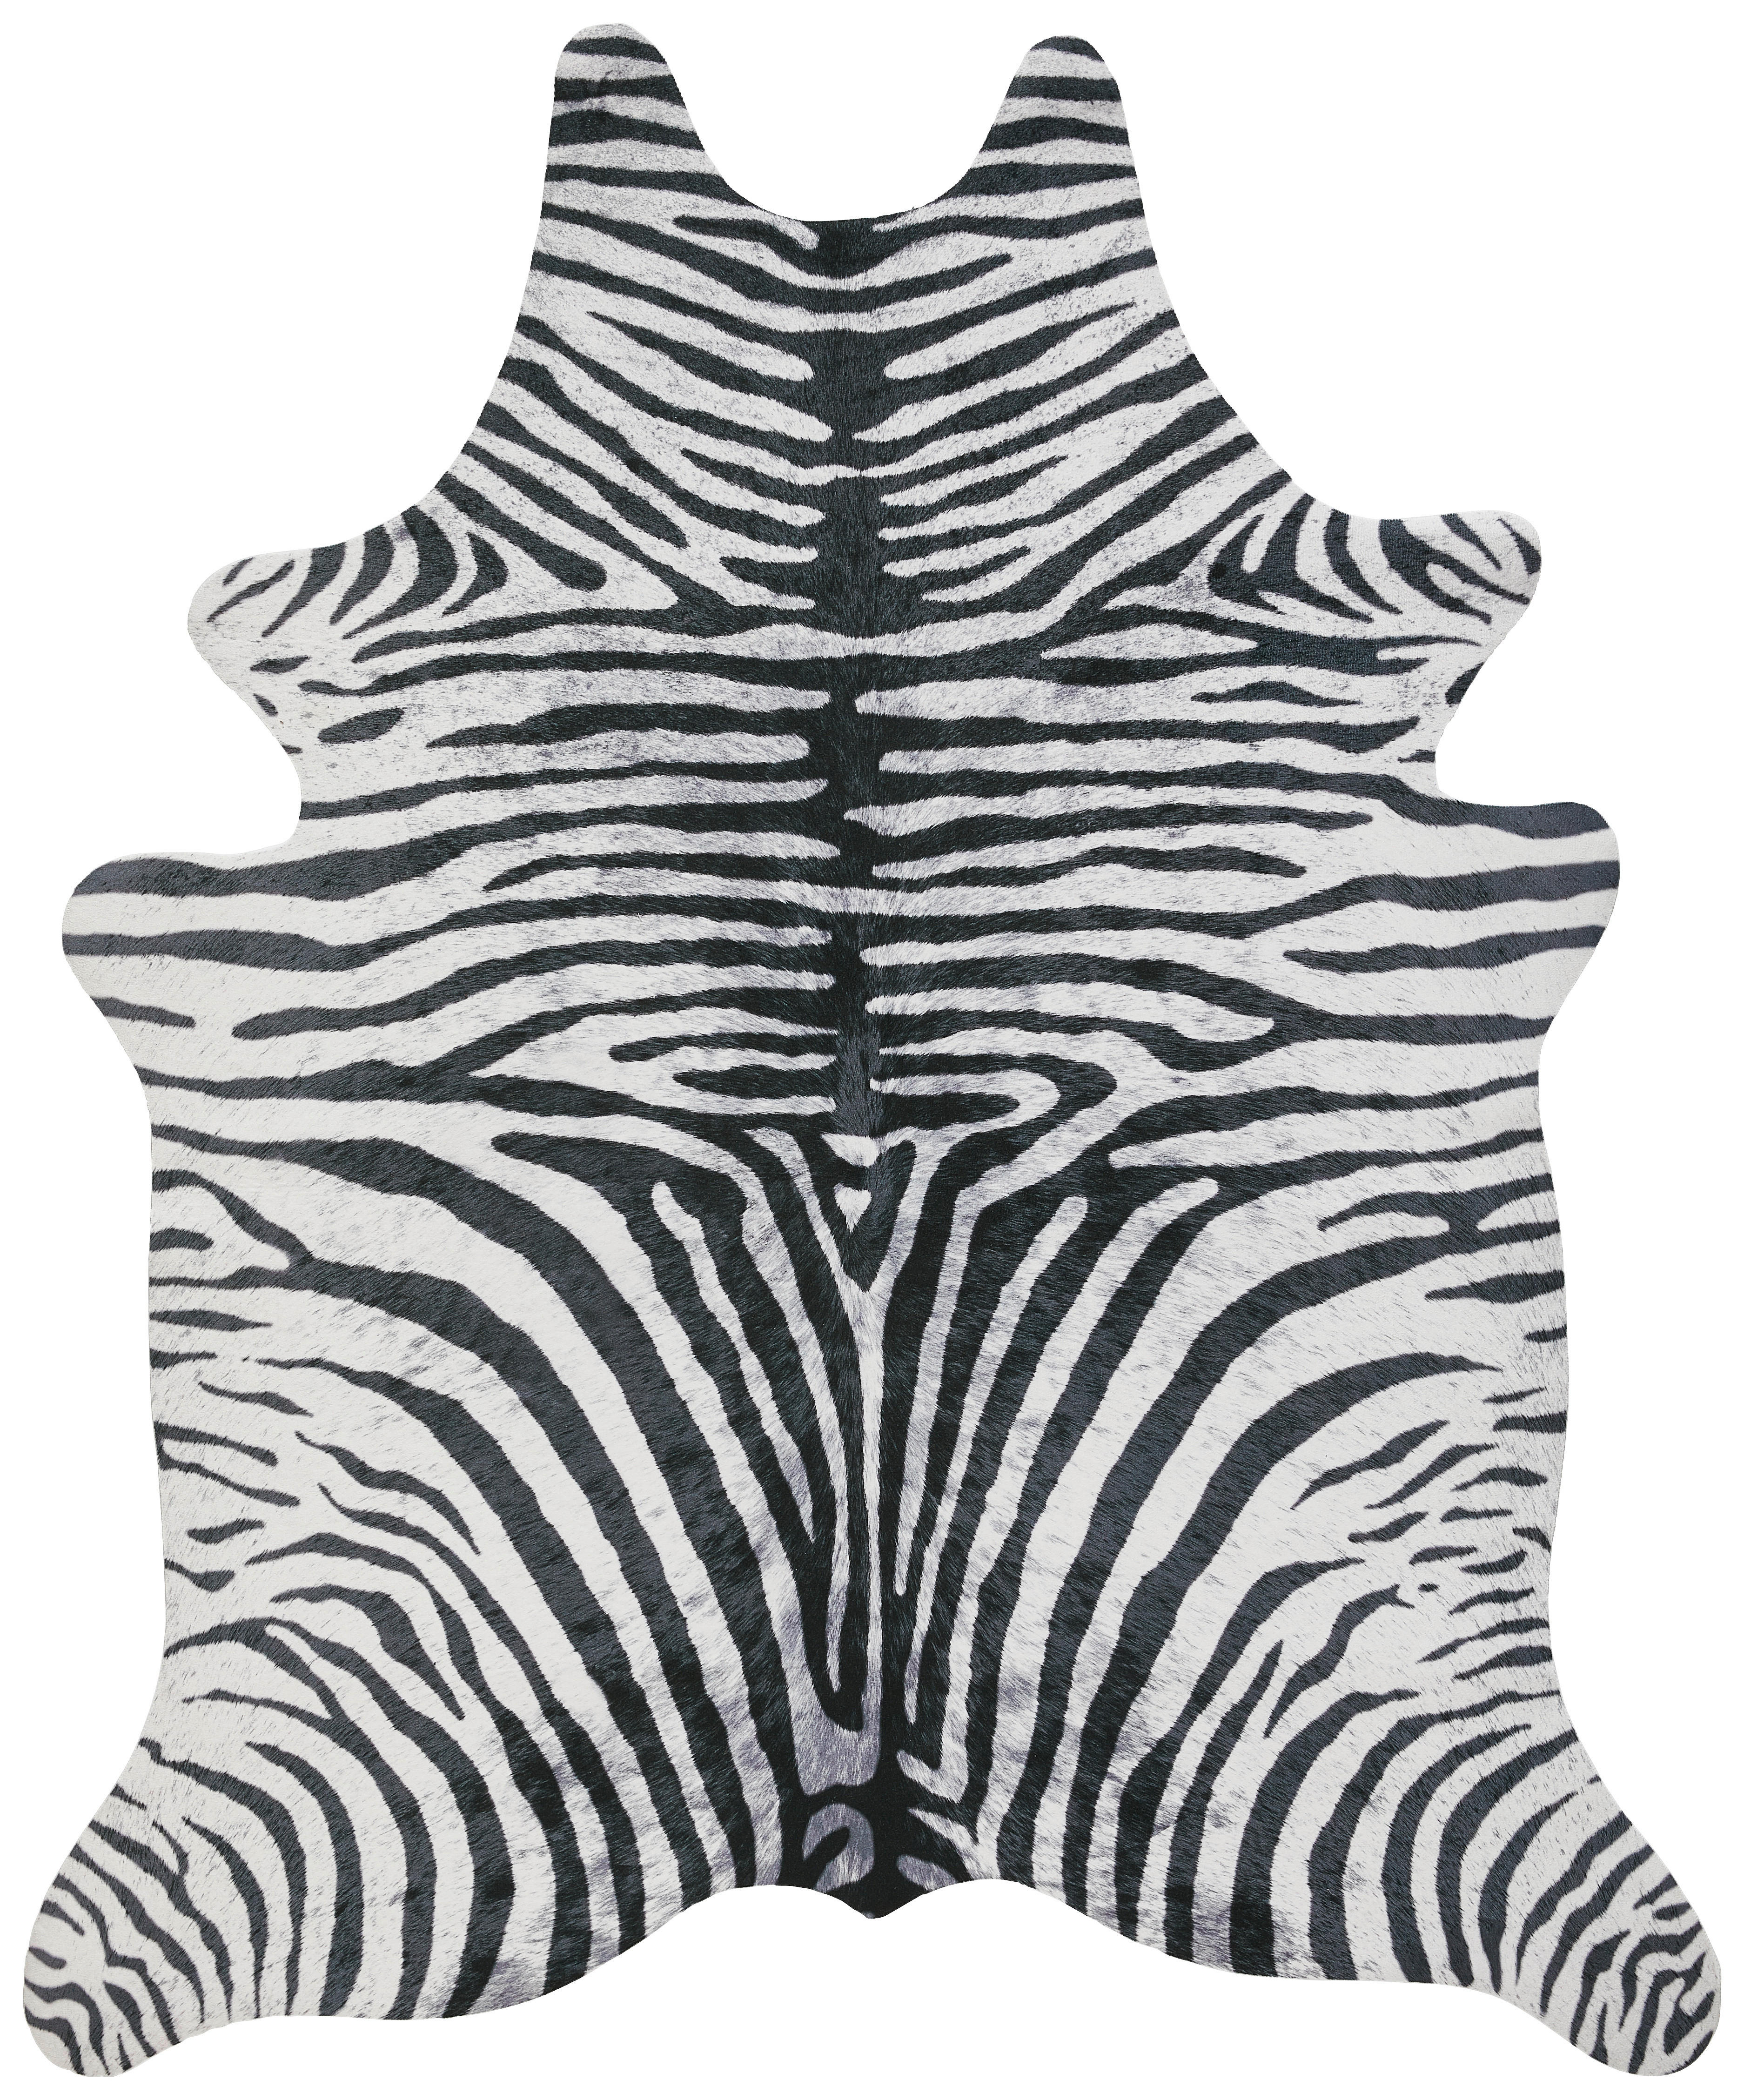 Kunstfell - Zebra - schwarz - weiß